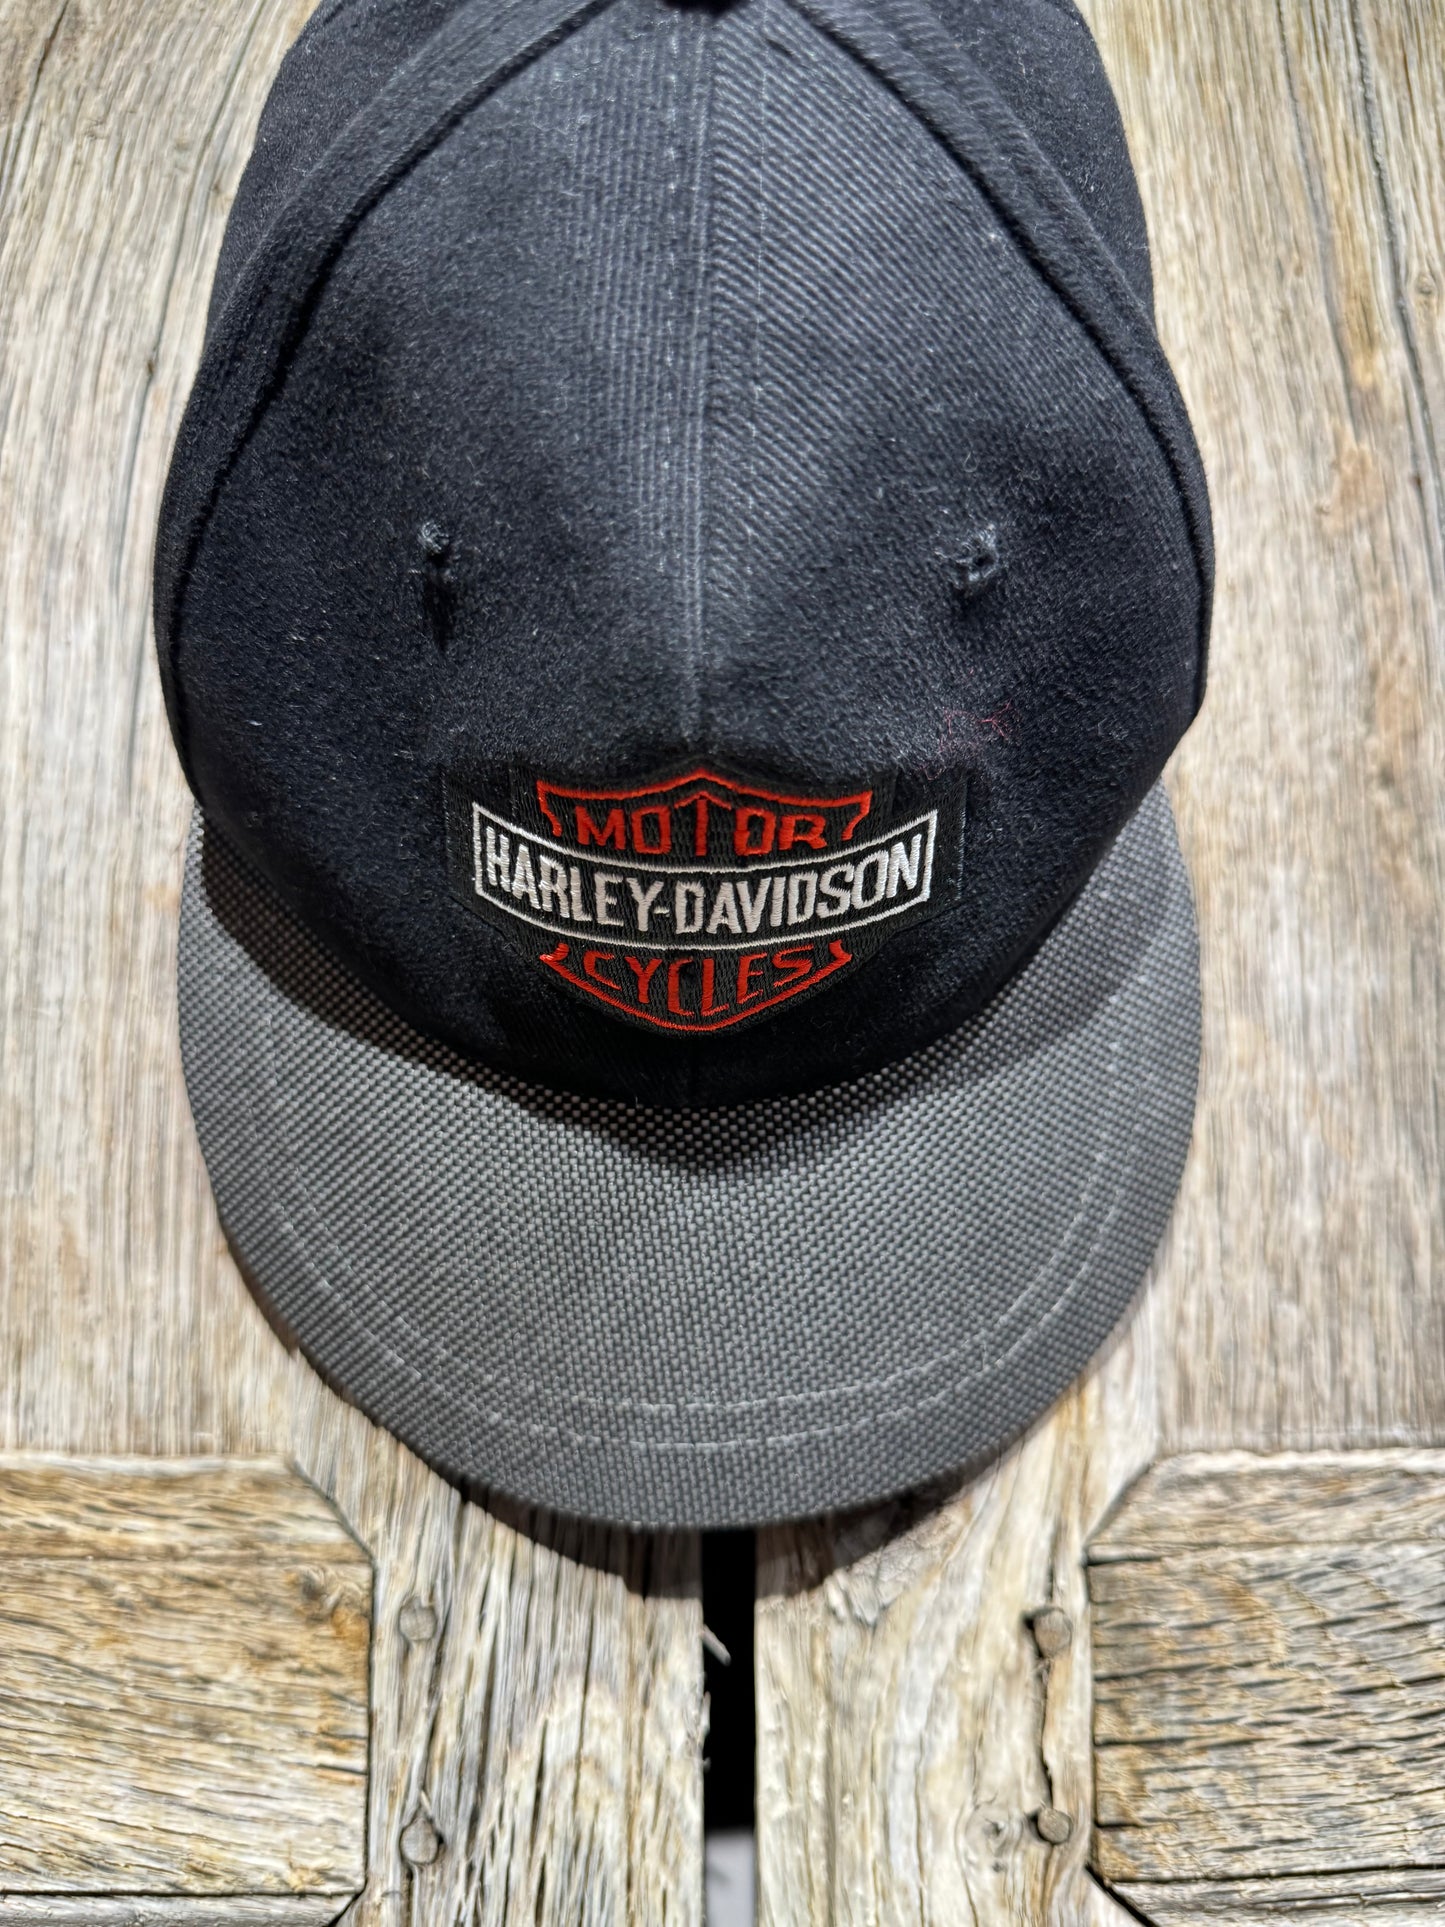 Vintage Harley Davidson Cap